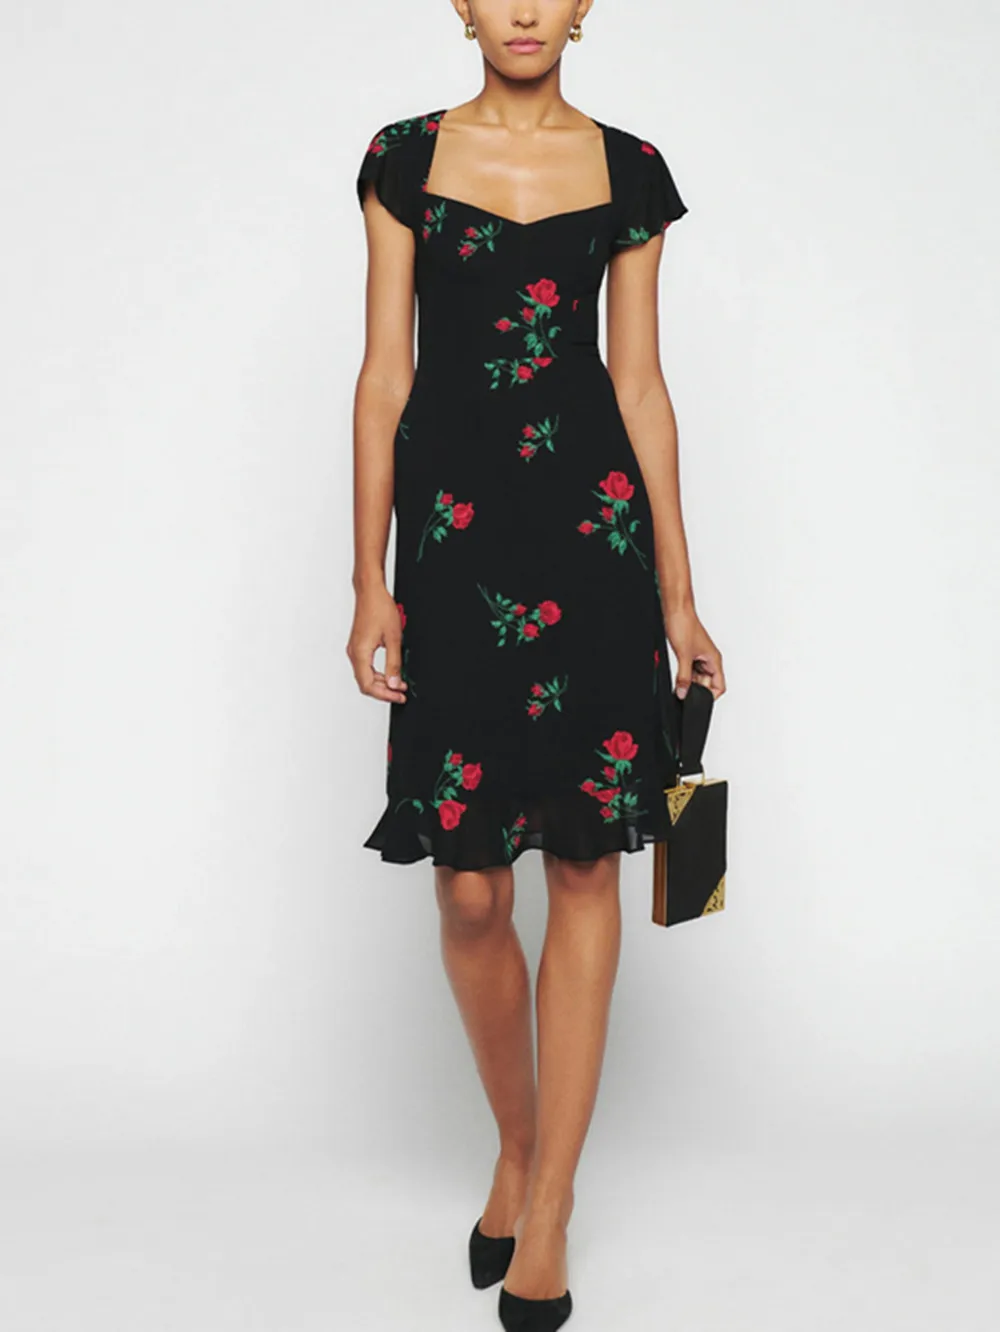 

Женское приталенное платье с открытой спиной, привлекательное облегающее платье средней длины с квадратным вырезом, короткими рукавами и оборками в стиле ретро с принтом роз, новинка на лето